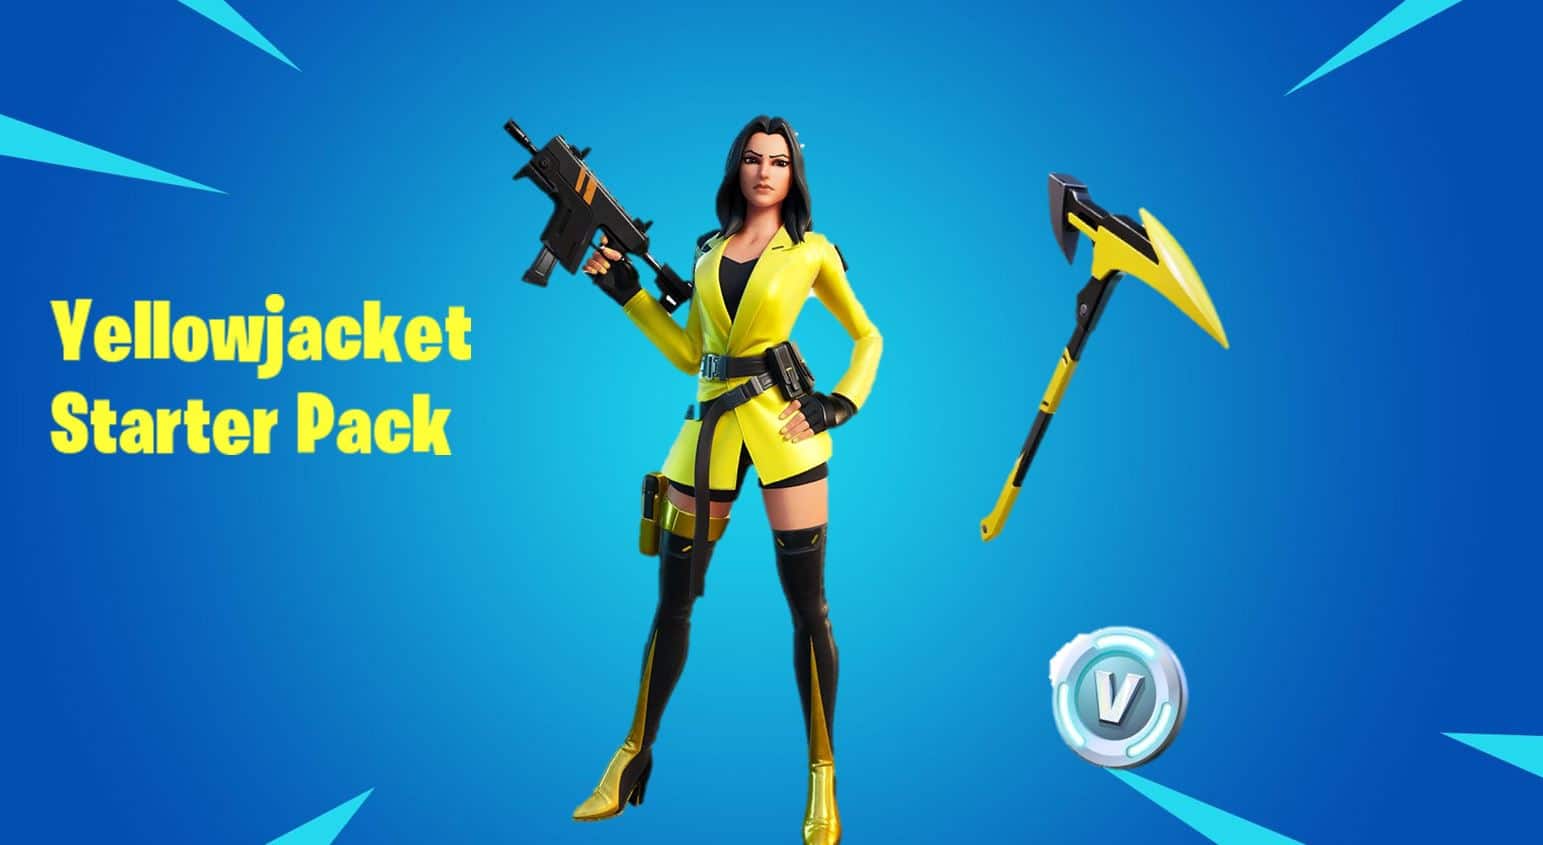 Yellowjacket Fortnite starter pack